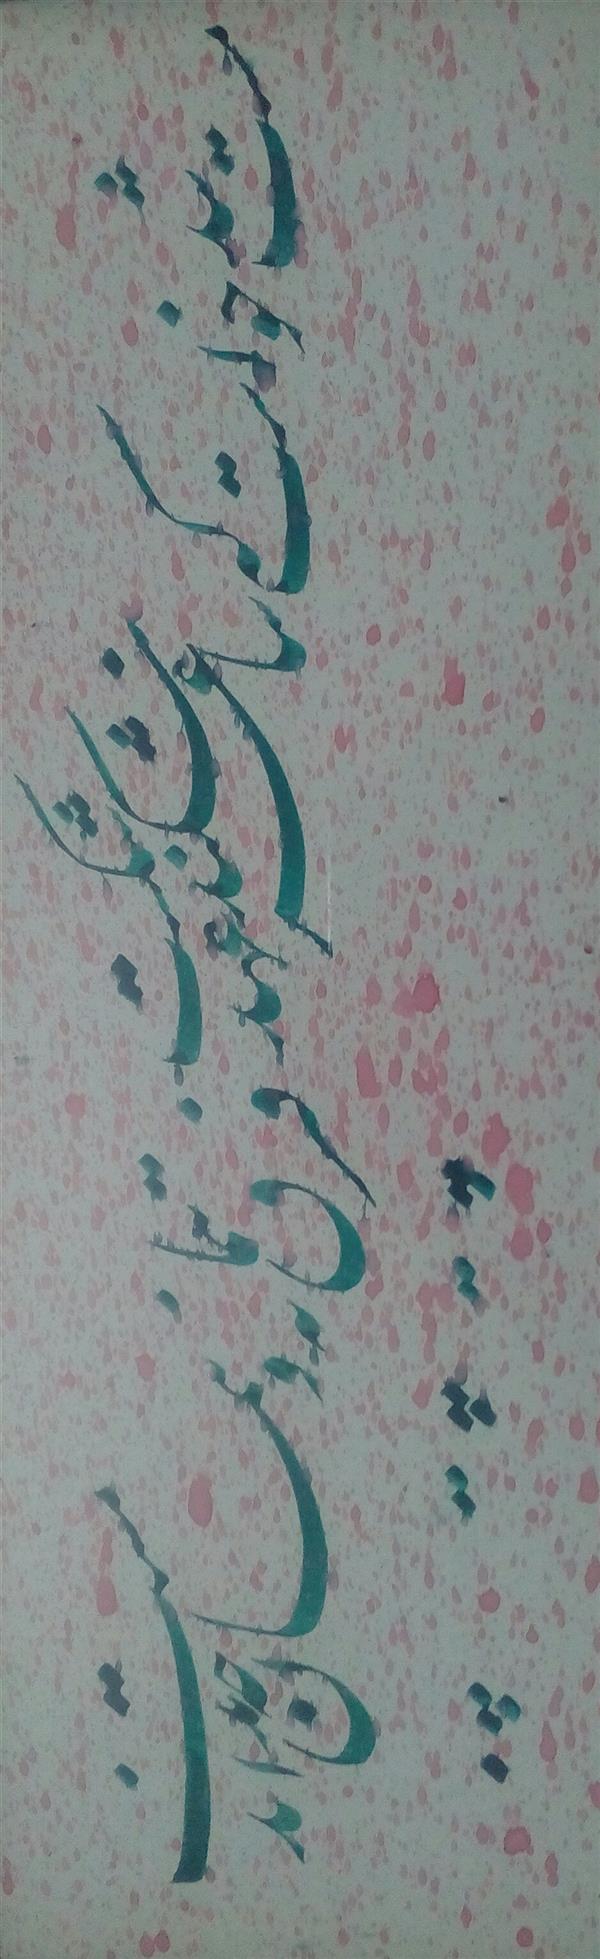 هنر خوشنویسی محفل خوشنویسی عبدالله جعفری #ابعاد بدون قاب 46*16 cm
شعر مولوی،نستعلیق،قاب گرفته شده